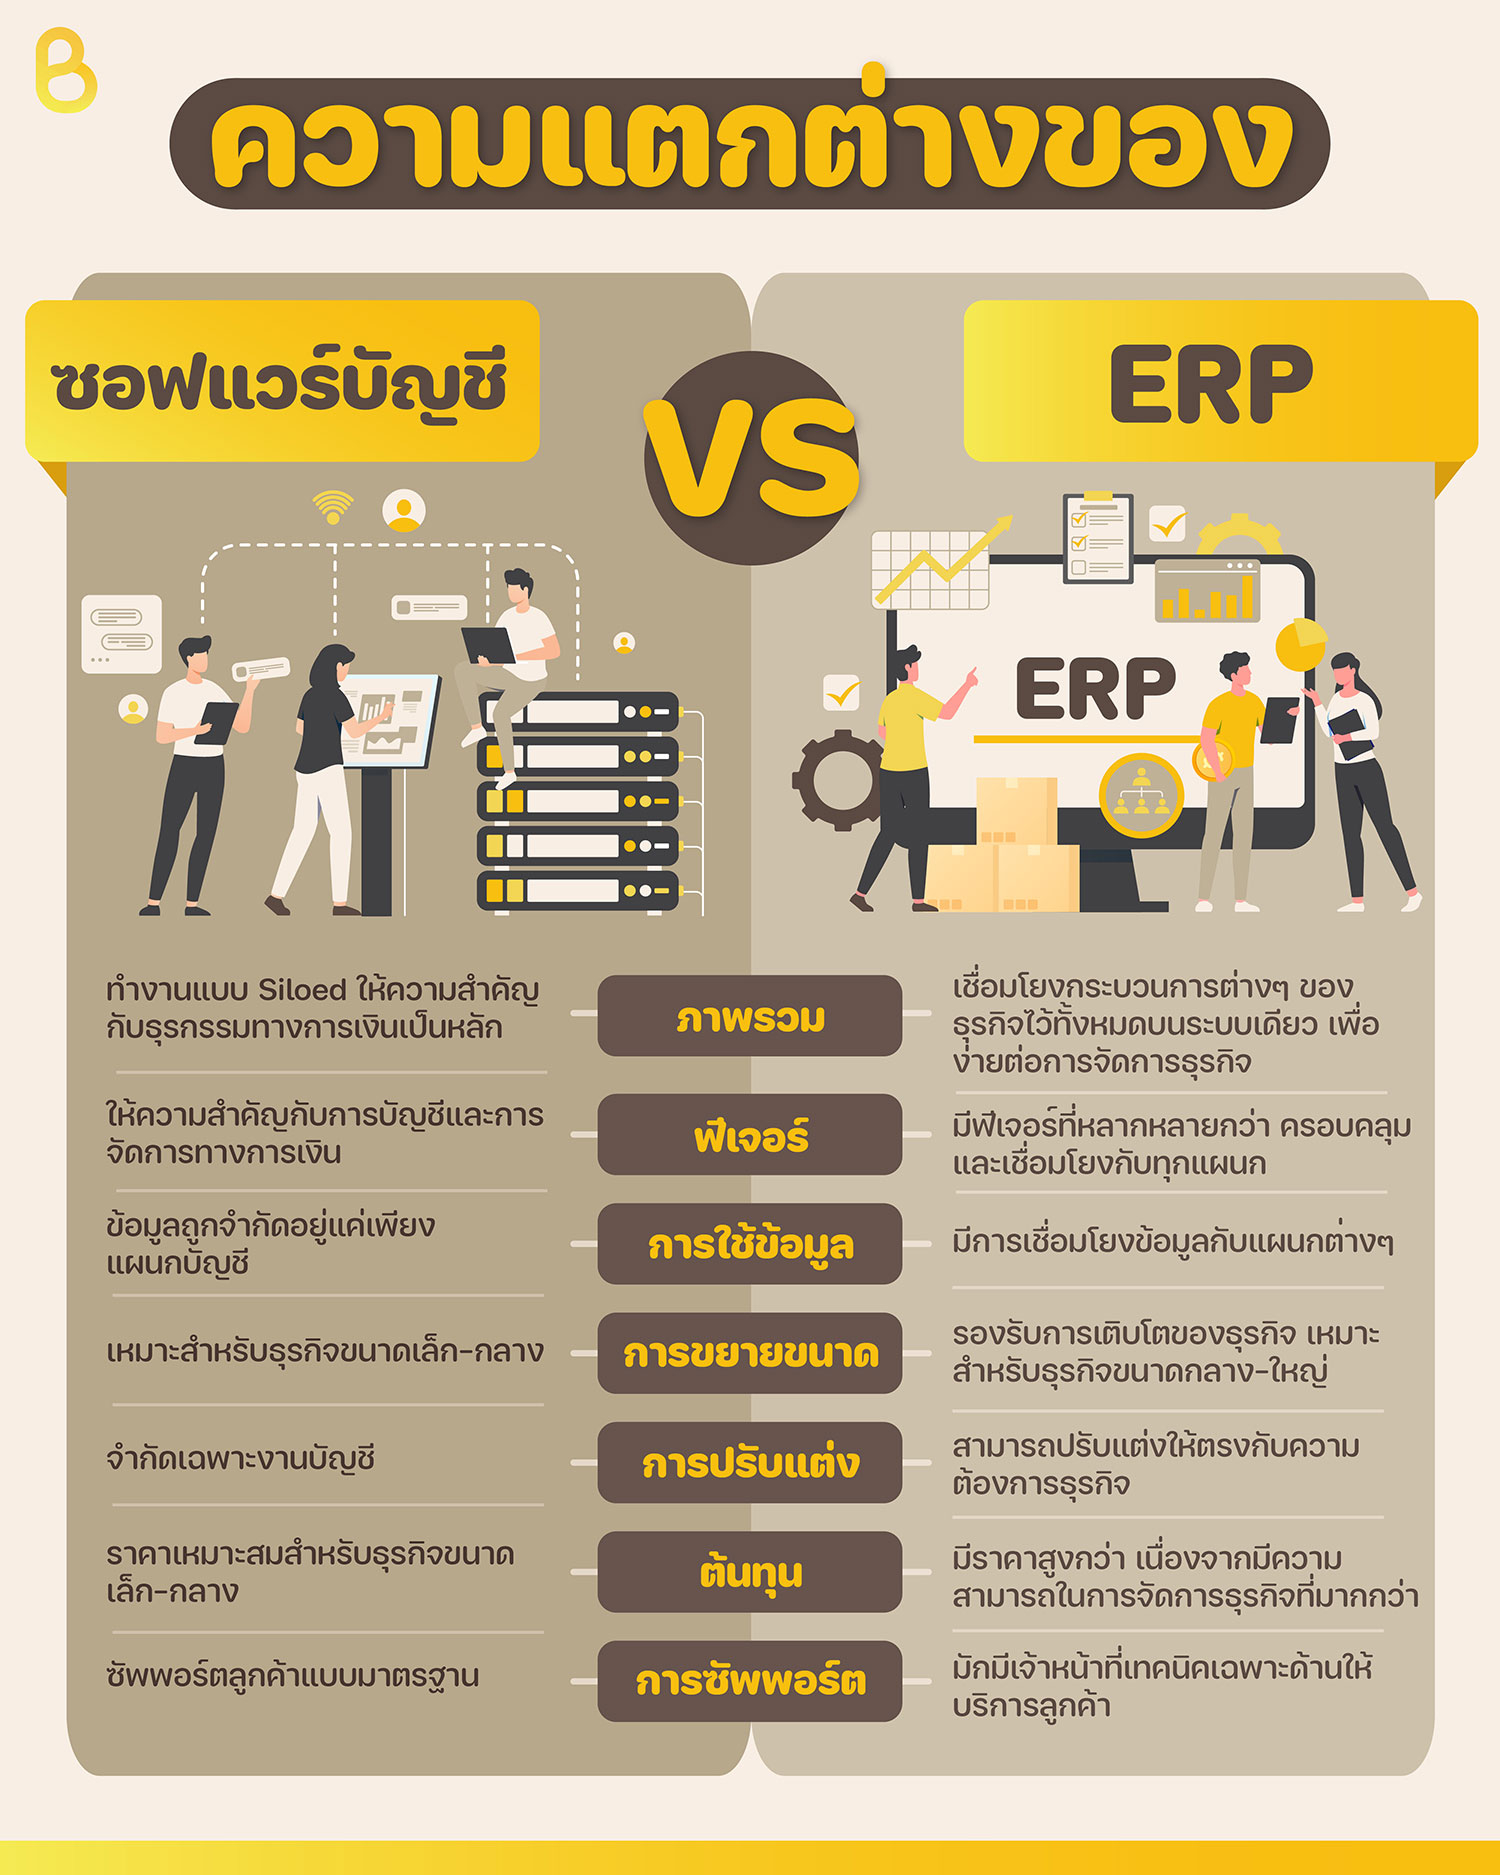 เข้าใจความแตกต่างระหว่าง ระบบ ERP กับ โปรแกรมบัญชี